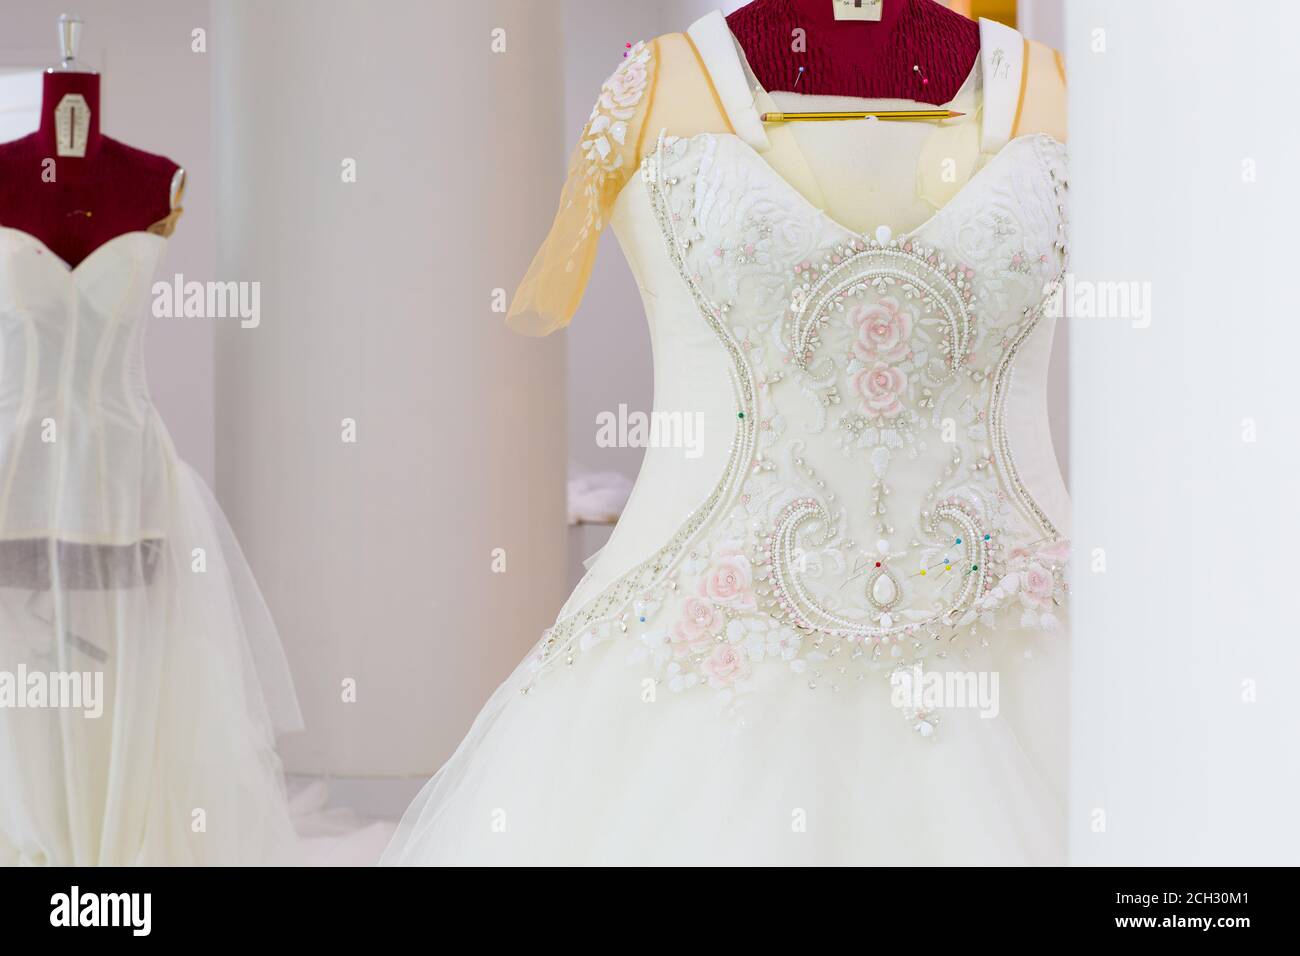 Bellissimo abito da sposa haute-couture con ricami intricati fatti a mano e dettagli in cristallo su un manichino in un laboratorio di design nuziale. Foto Stock